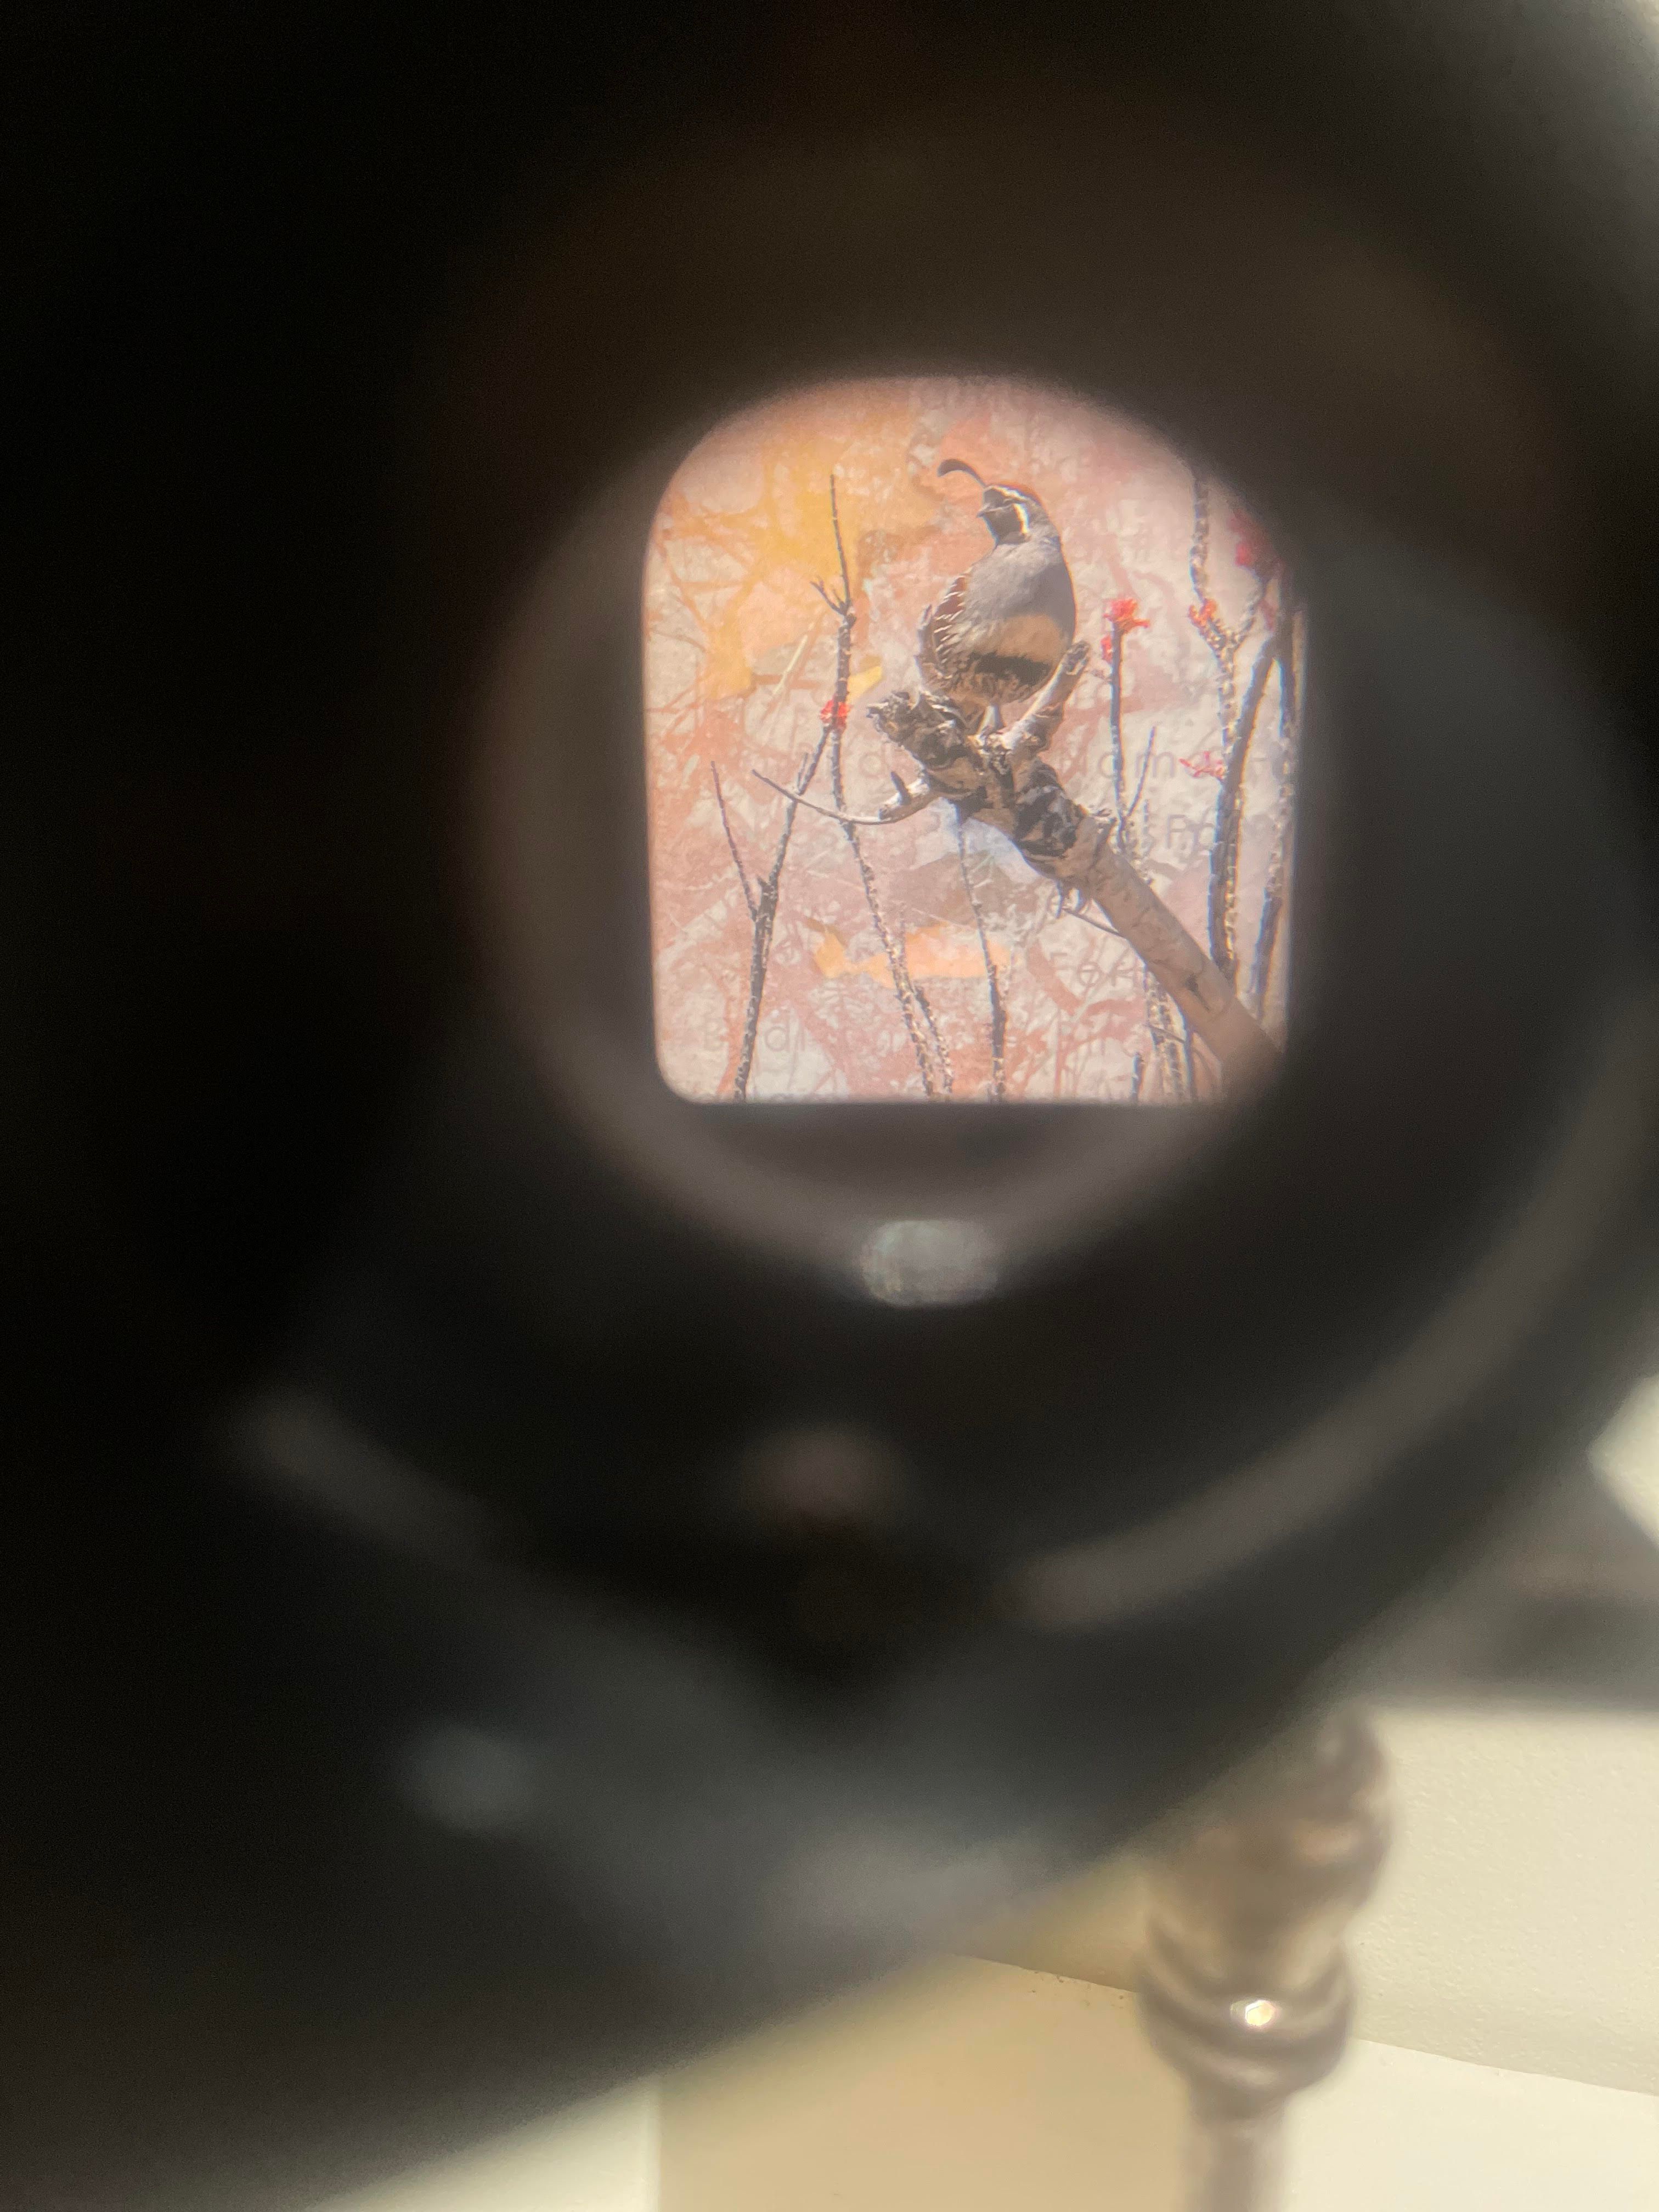 A quail as seen through a stereoscope